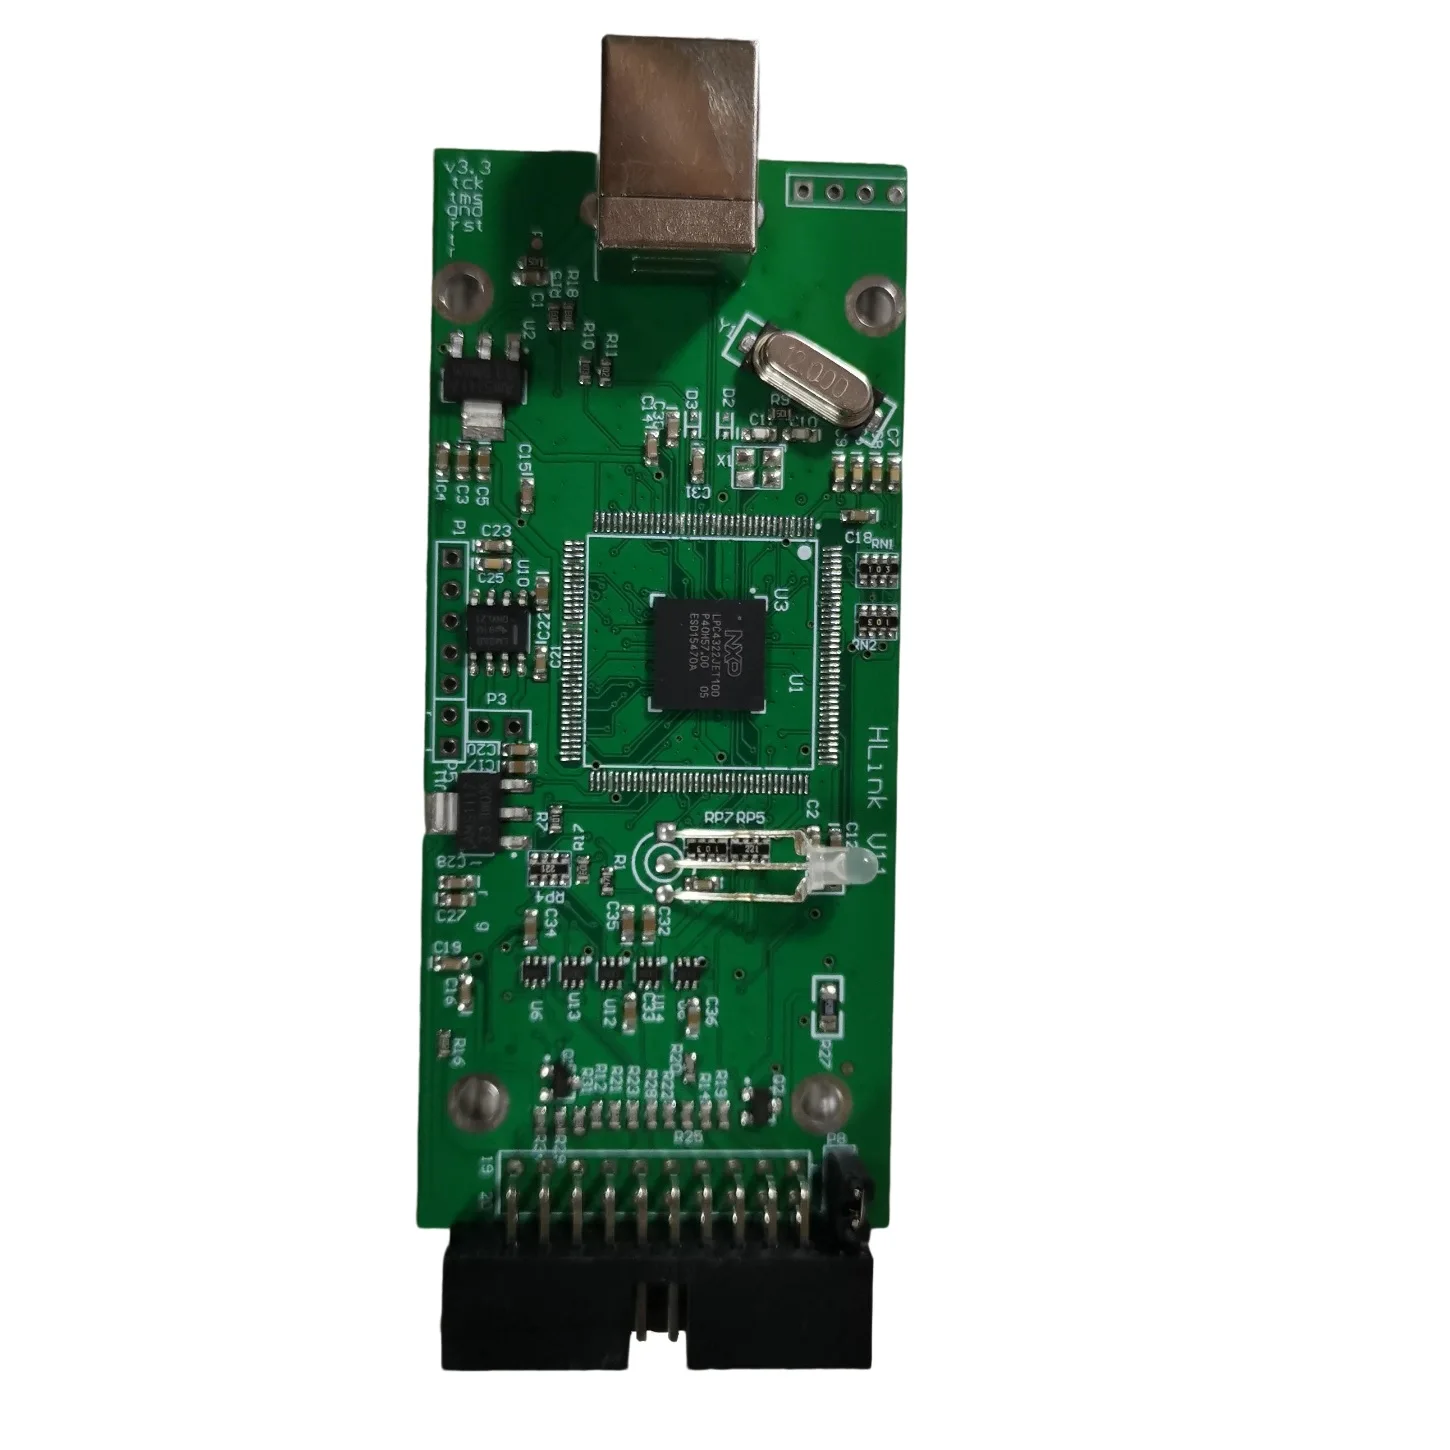 For J-LINK v11 J Link V9 JLINK V9 ARM Emulator Adapter USB JTAG For STM32 ARM MCU Debug Tools images - 6